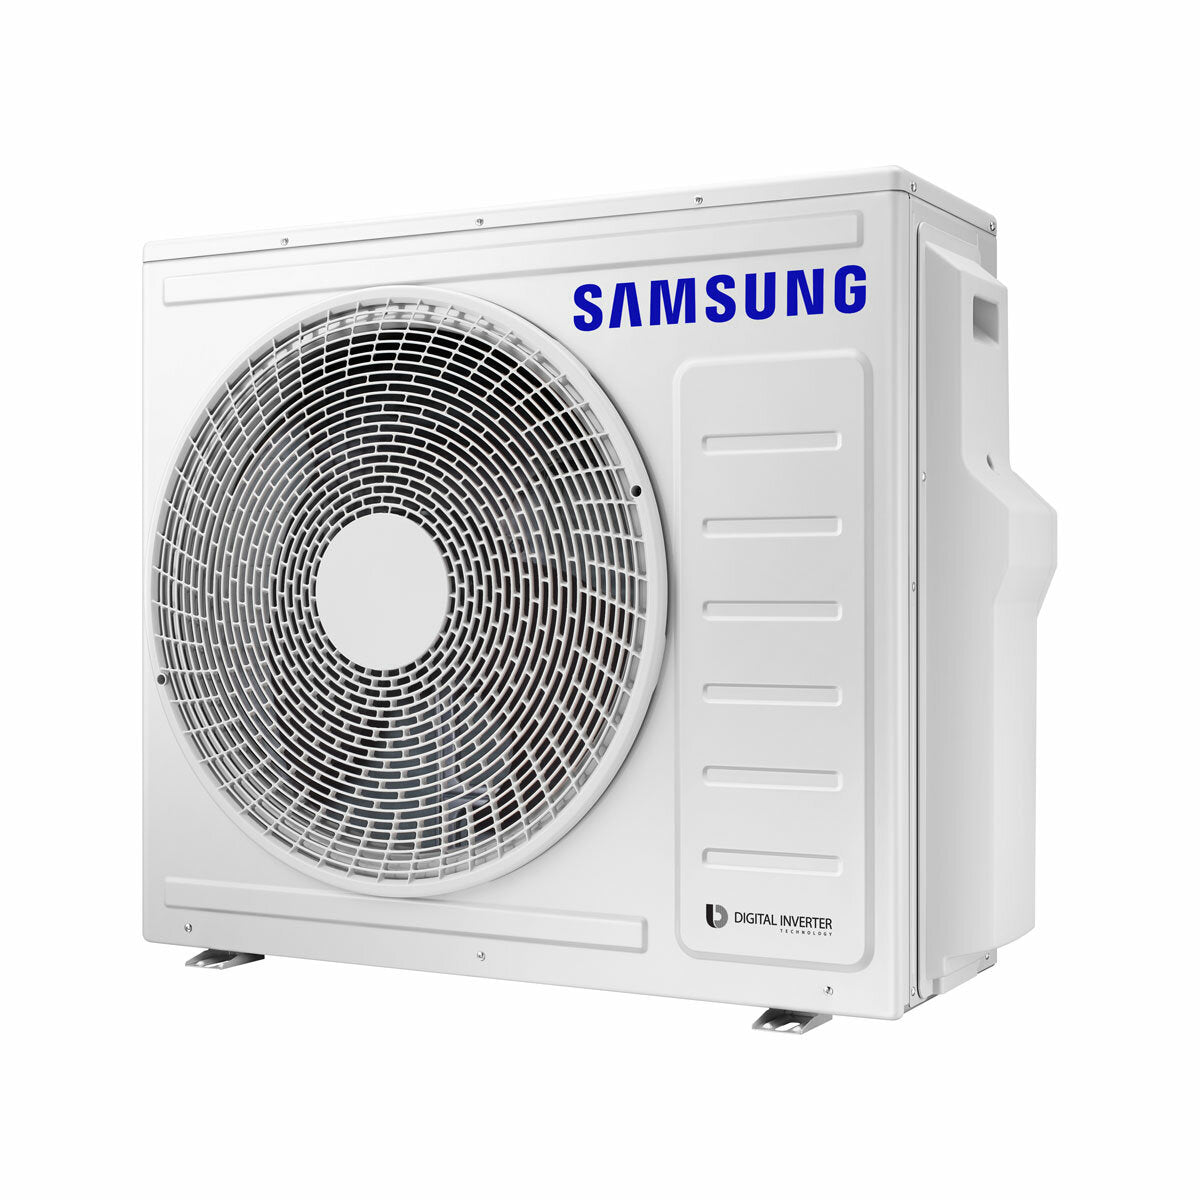 Samsung windfreie Klimaanlage Avant Quadri Split 9000 + 9000 + 9000 + 12000 BTU Inverter A++ WLAN Außengerät 8,0 kW